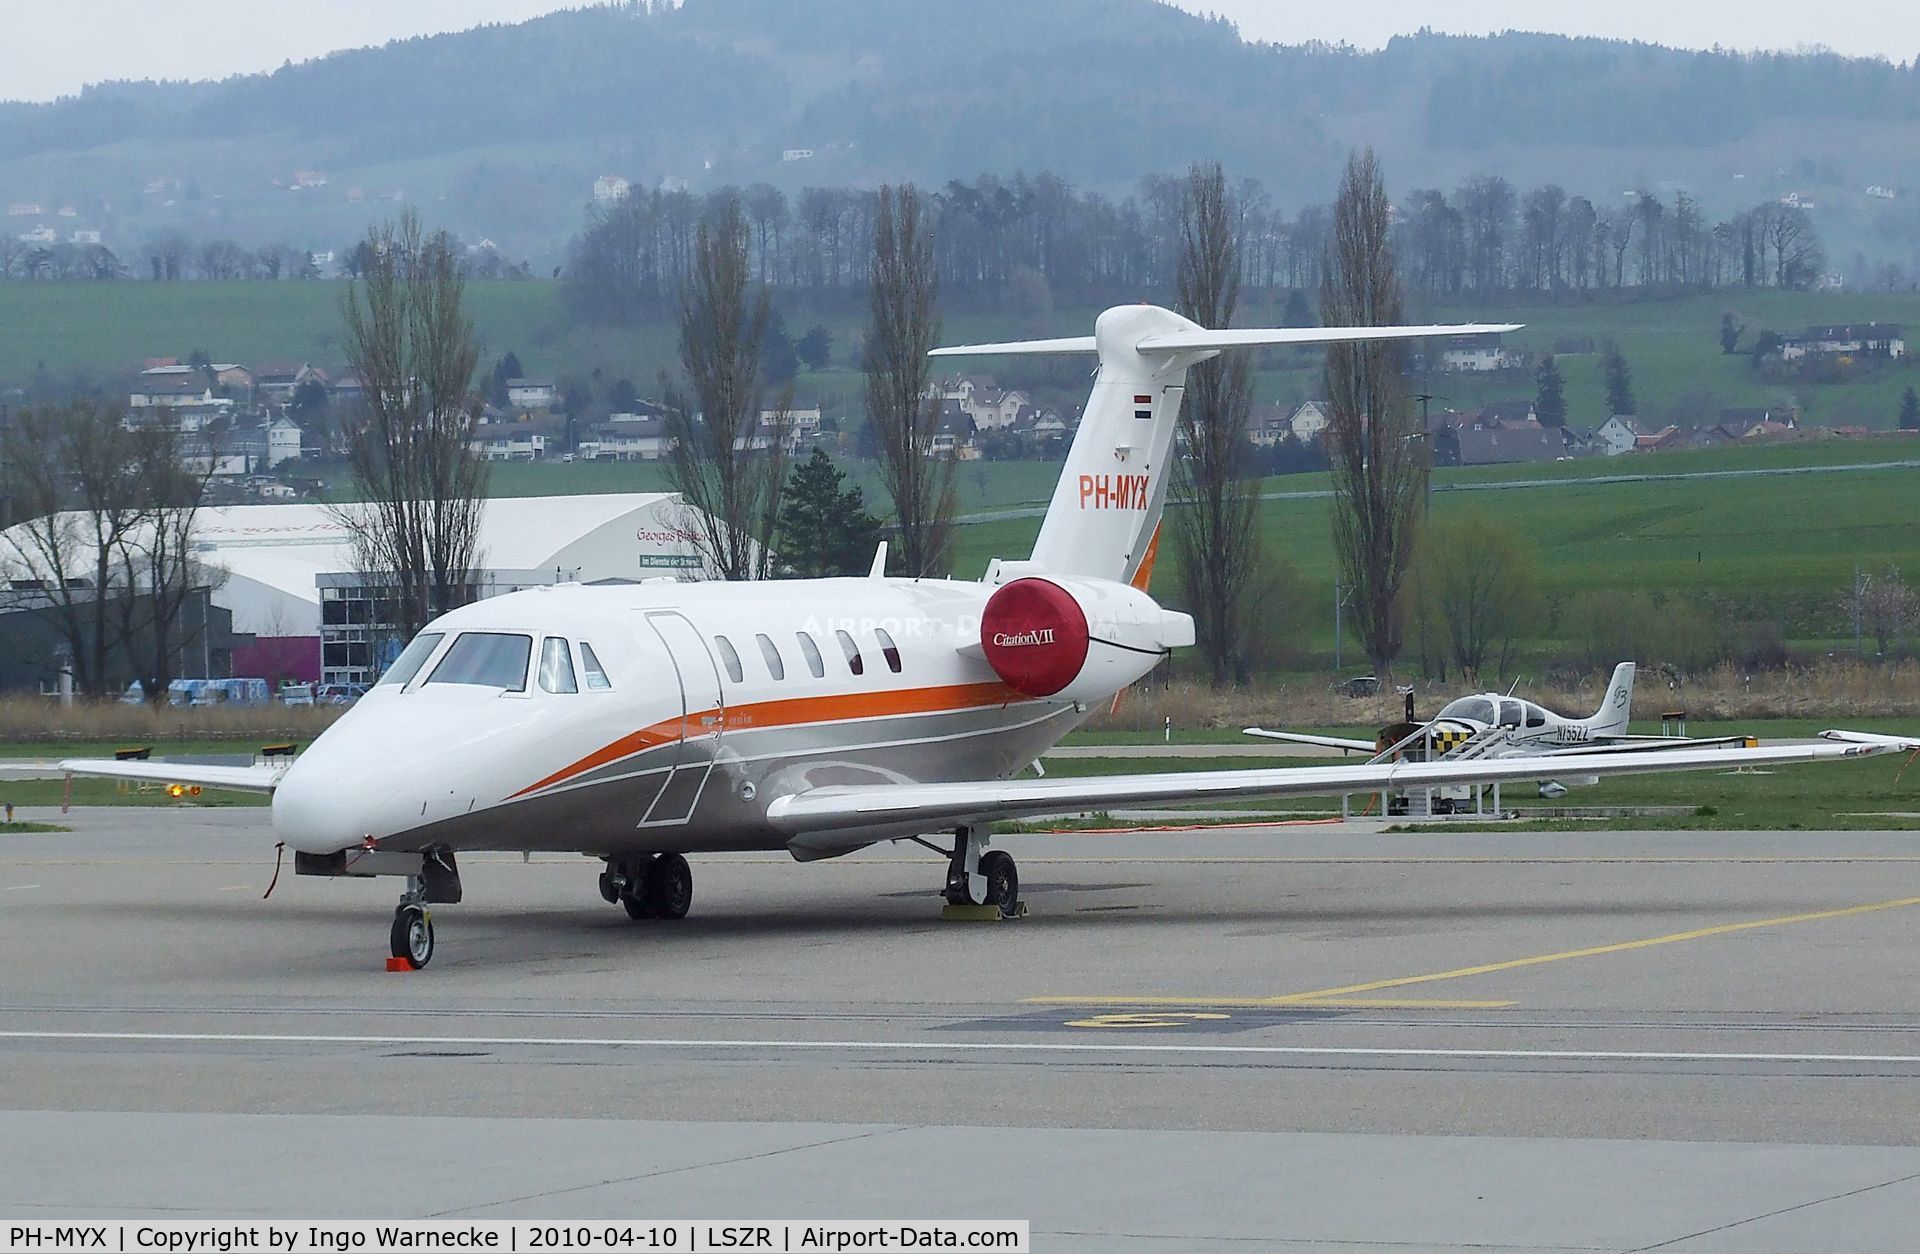 PH-MYX, 2000 Cessna 650 Citation VII C/N 650-7117, Cessna 650 Citation 7 at St. Gallen-Altenrhein airfield